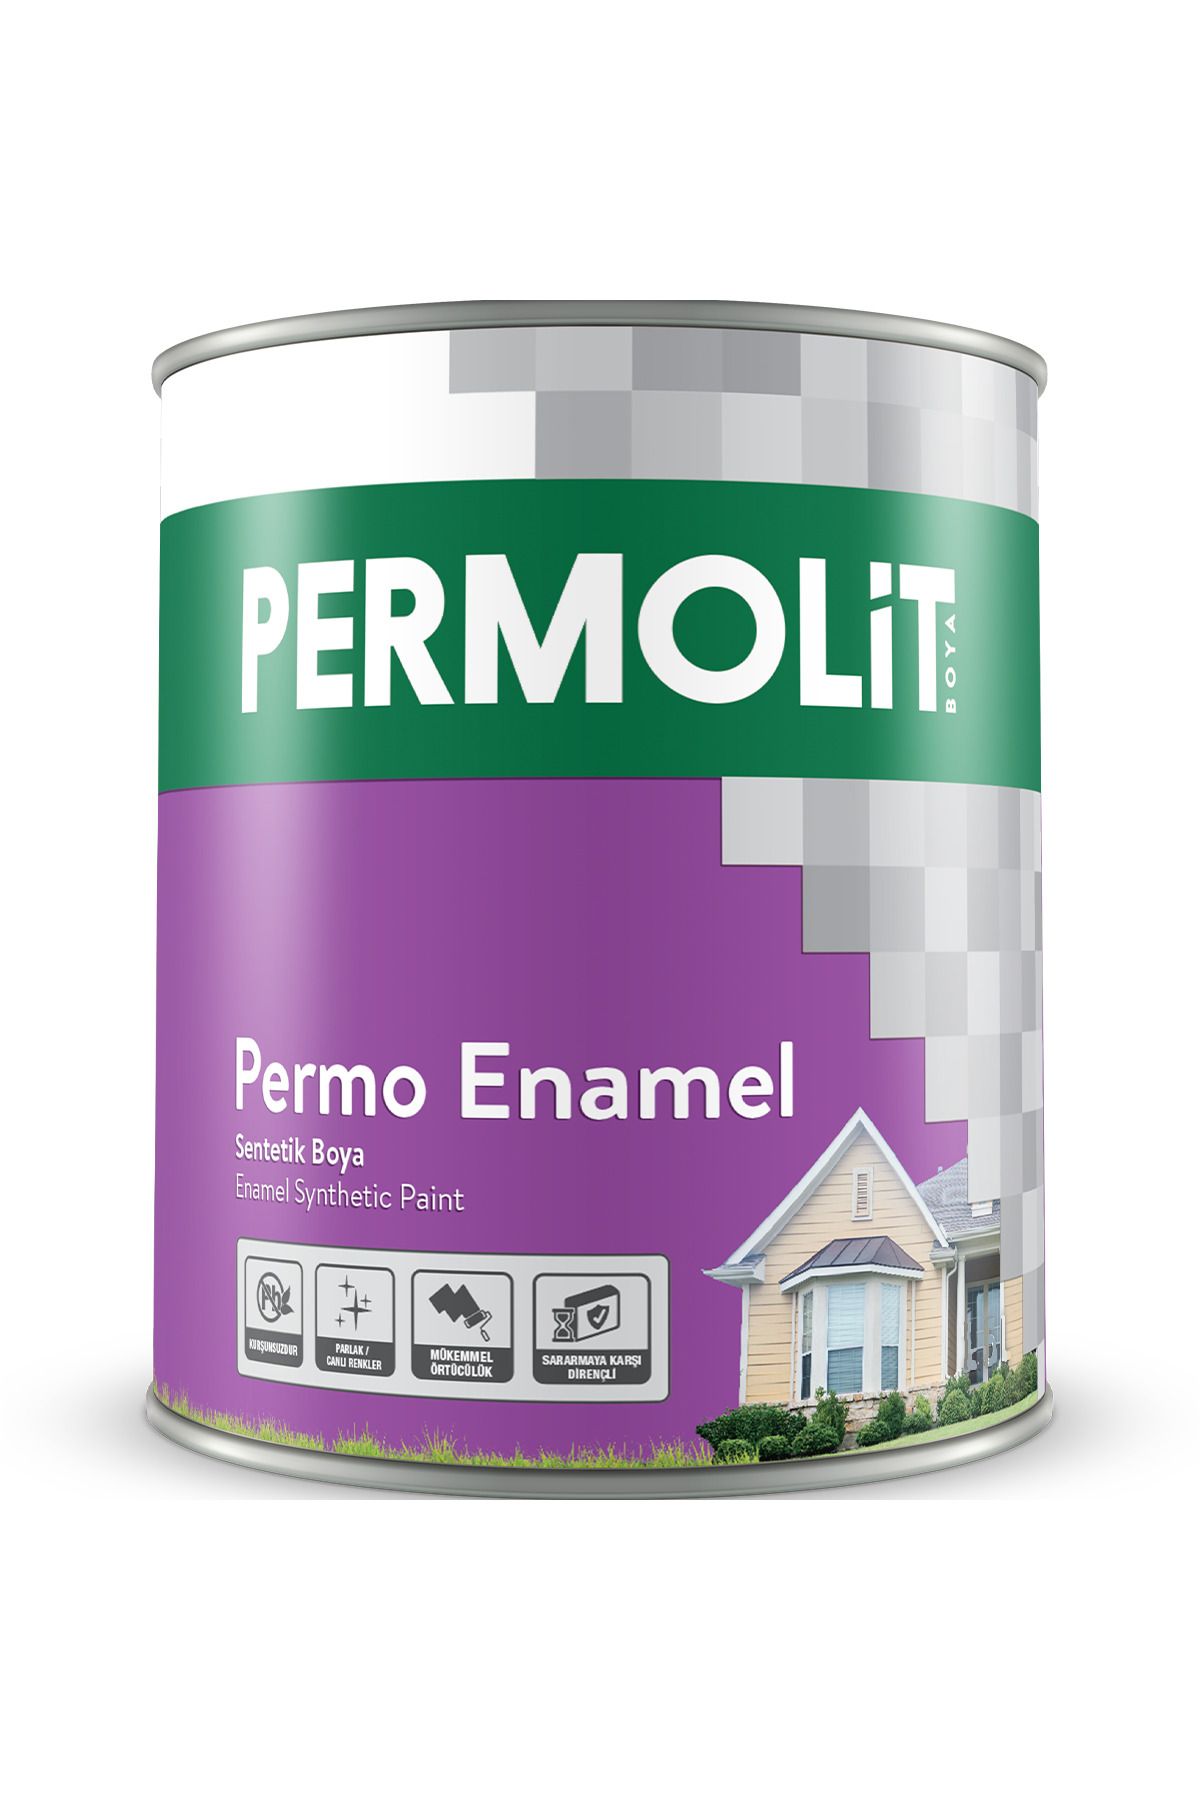 Permolit Permo Enamel Kurşuni Sentetik Boya 0,25 Lt. 34 Farklı Renk